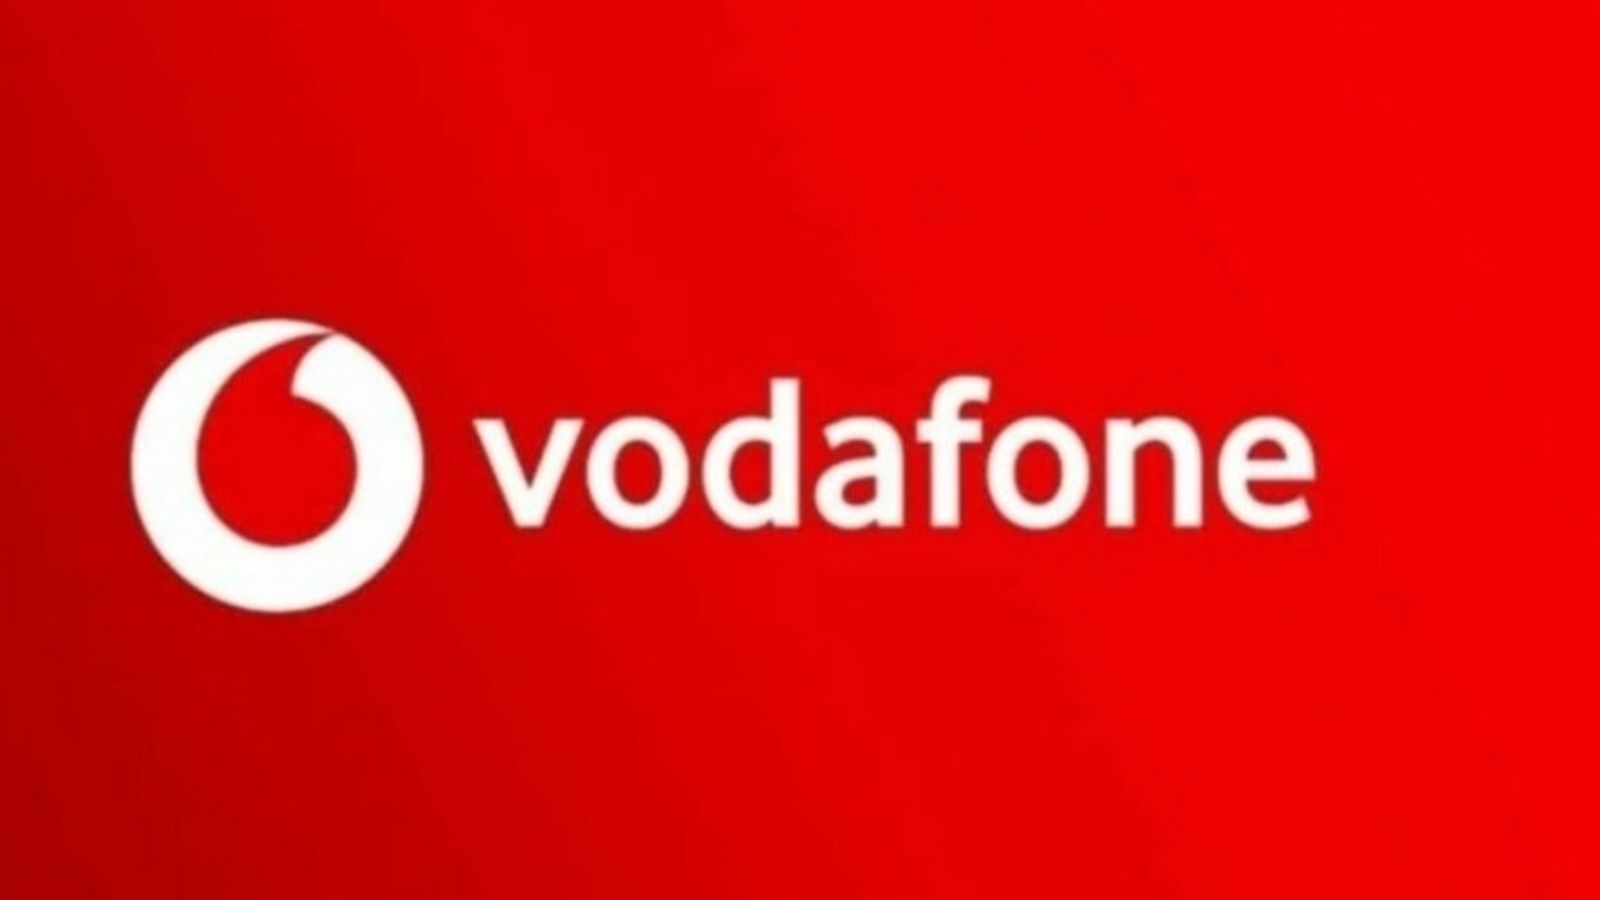 Vodafone Bronze Silver offerte negozi